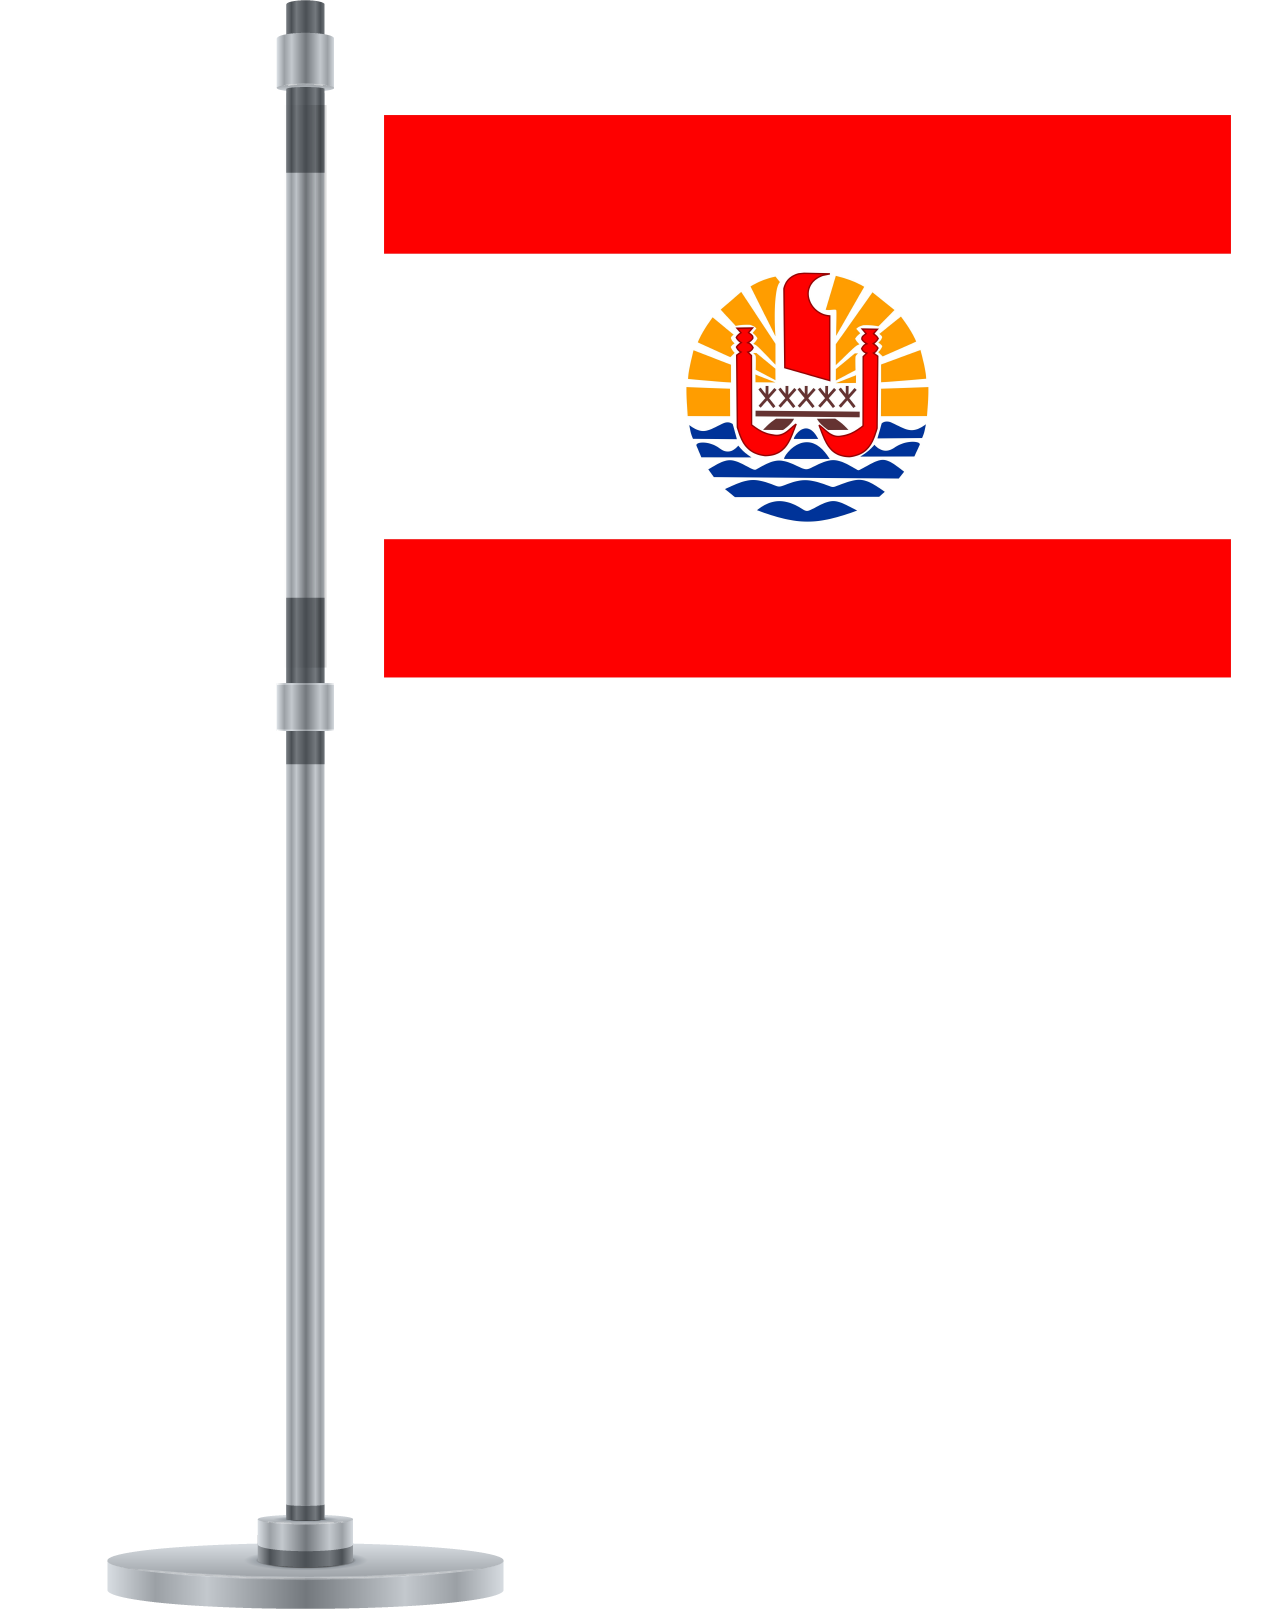 French Polynesia flag